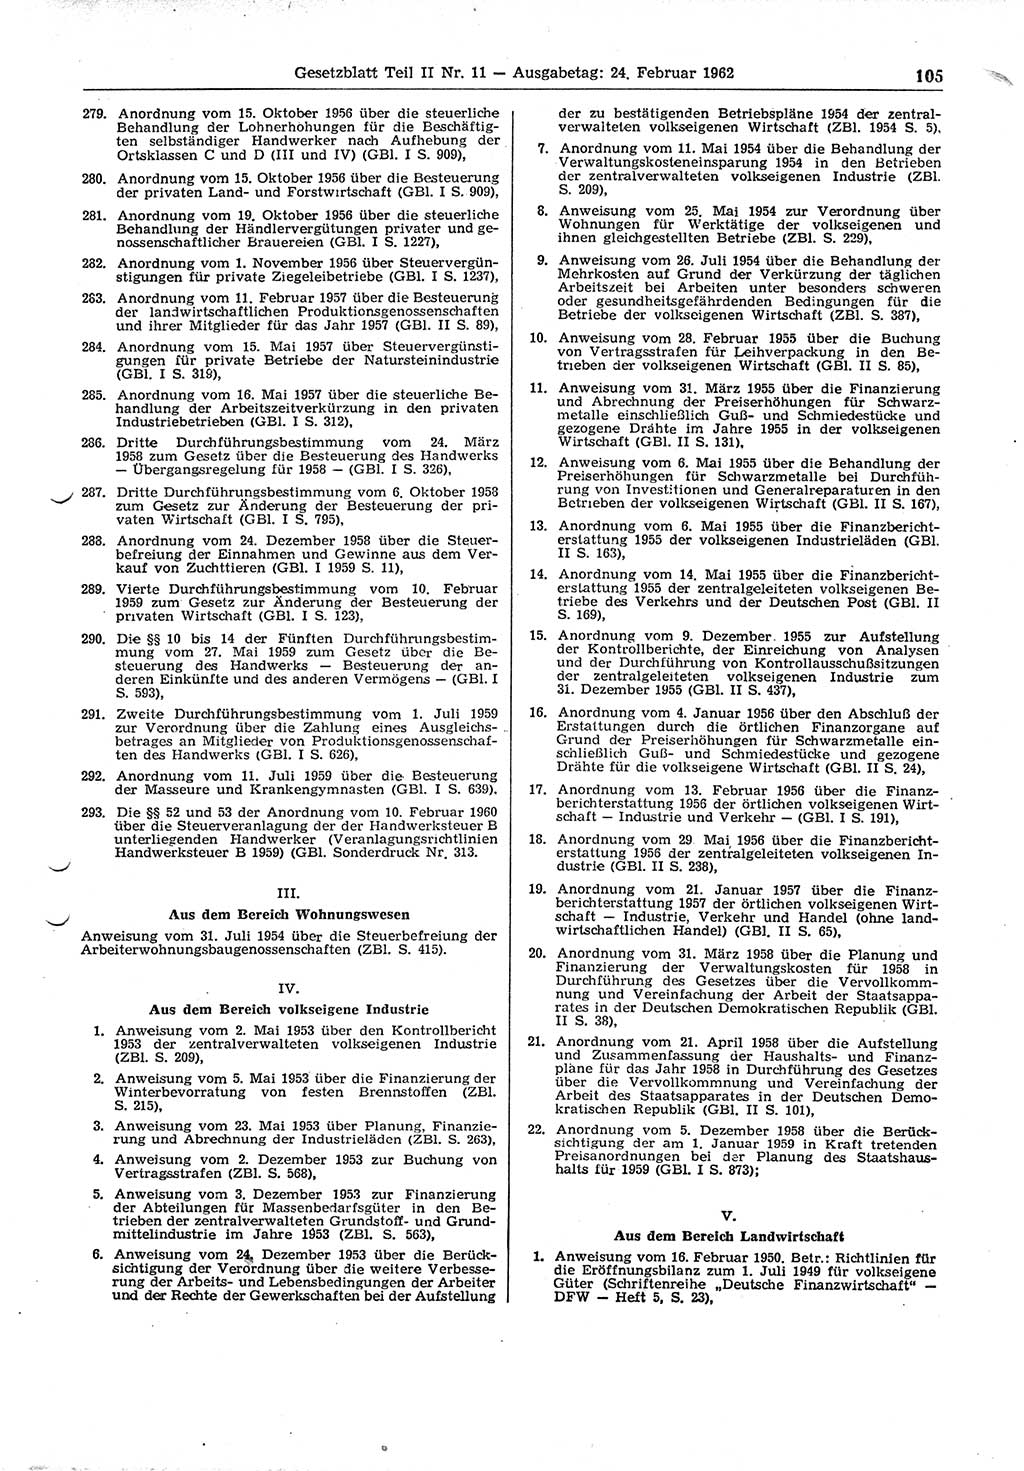 Gesetzblatt (GBl.) der Deutschen Demokratischen Republik (DDR) Teil ⅠⅠ 1962, Seite 105 (GBl. DDR ⅠⅠ 1962, S. 105)